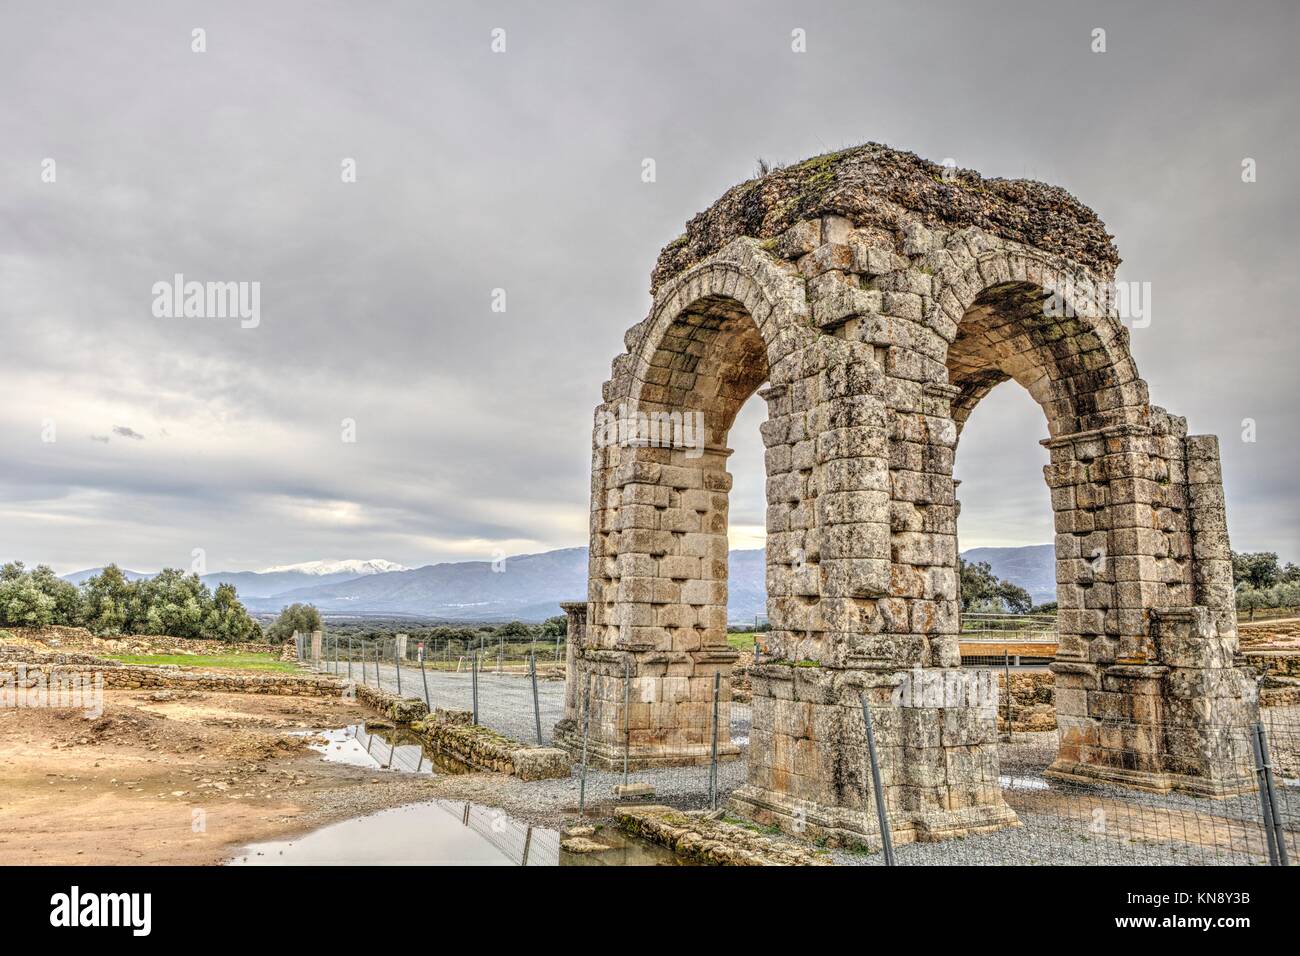 Römische Bogen von Caparra, (1.-2. Jh. nach Chr.). Kreuzung antike Stadt Ruinen in Silber Route, Via de la Plata, Caceres, Spanien. Stockfoto